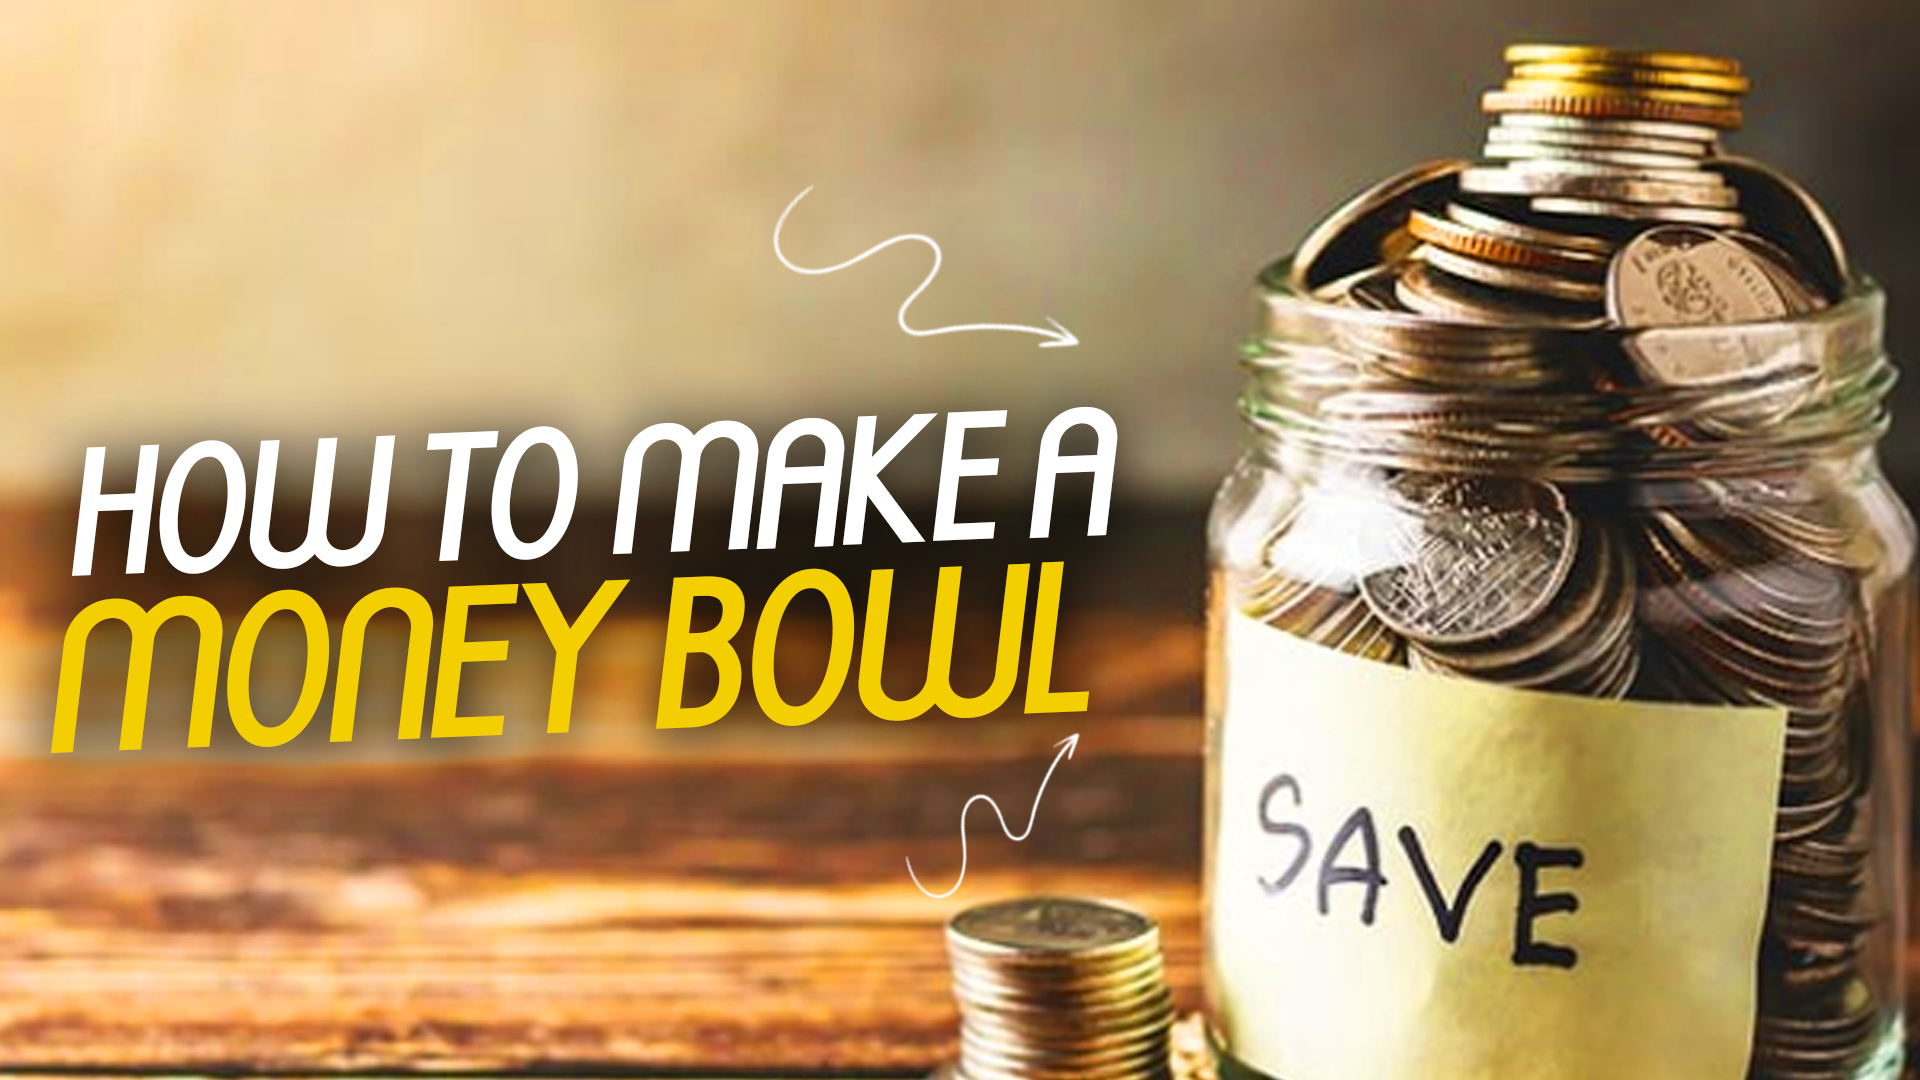 How to make a money bowl